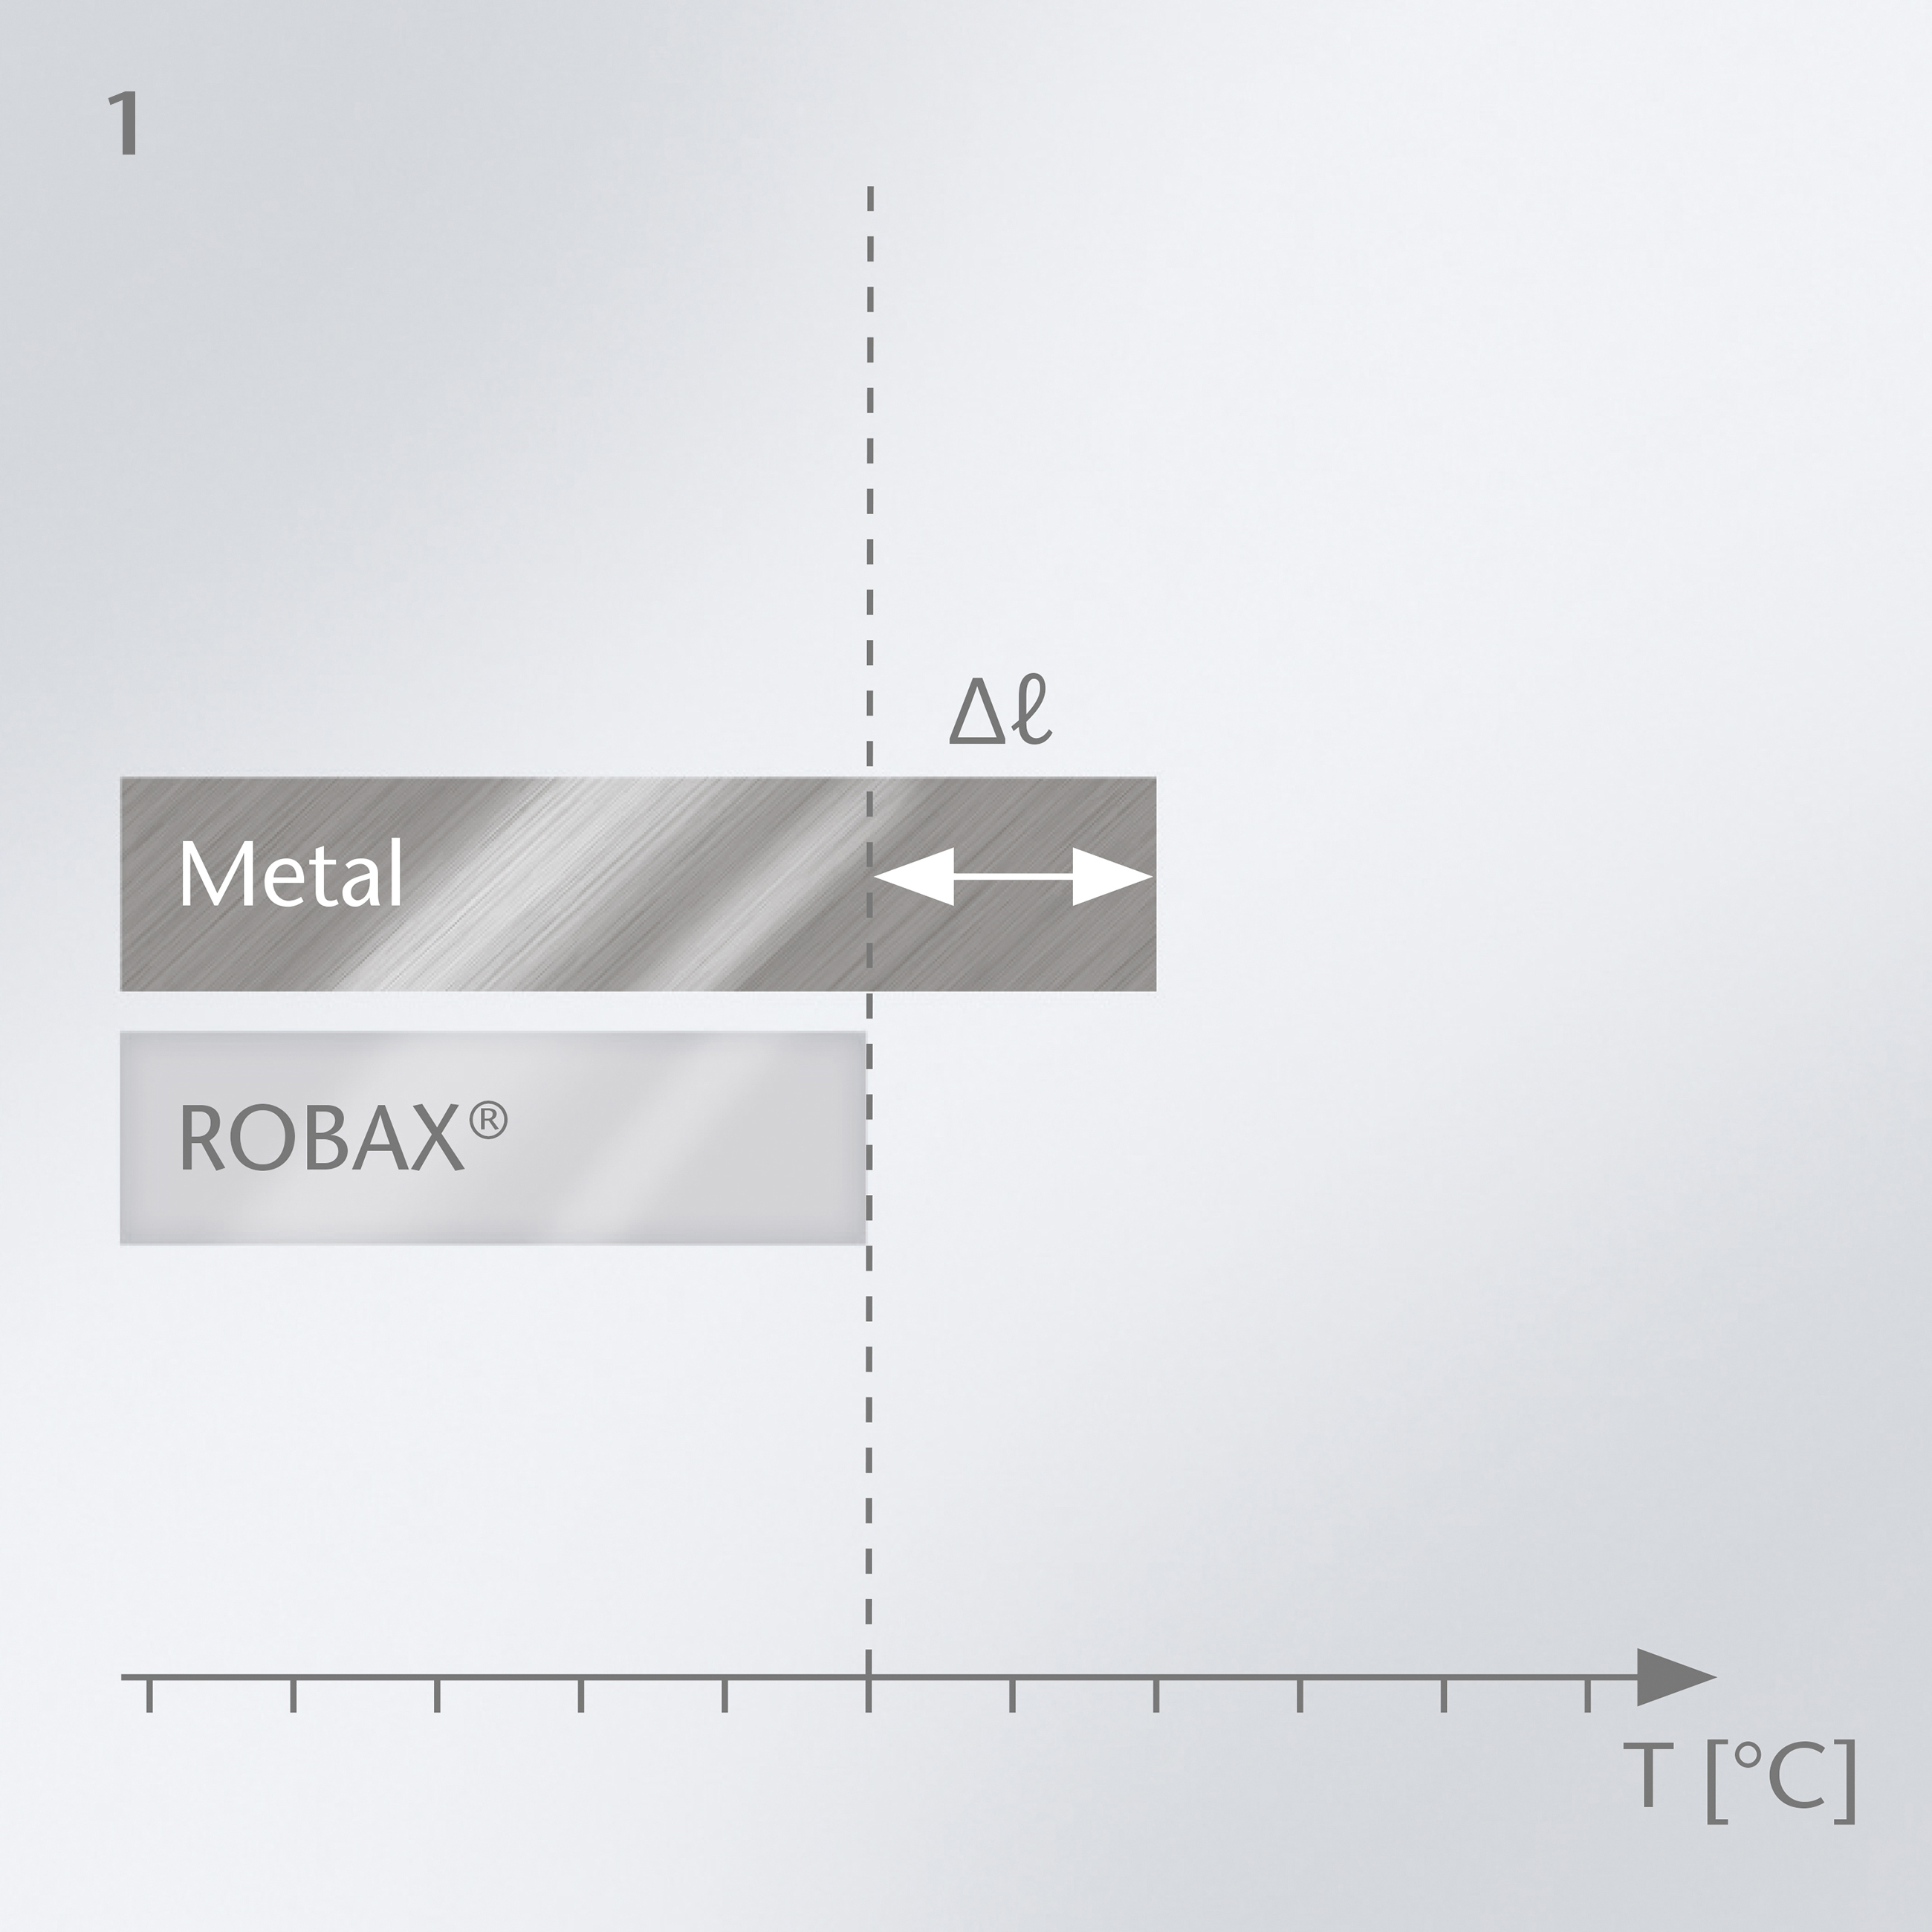 肖特 ROBAX® 微晶玻璃与金属相比几乎为零的热膨胀图